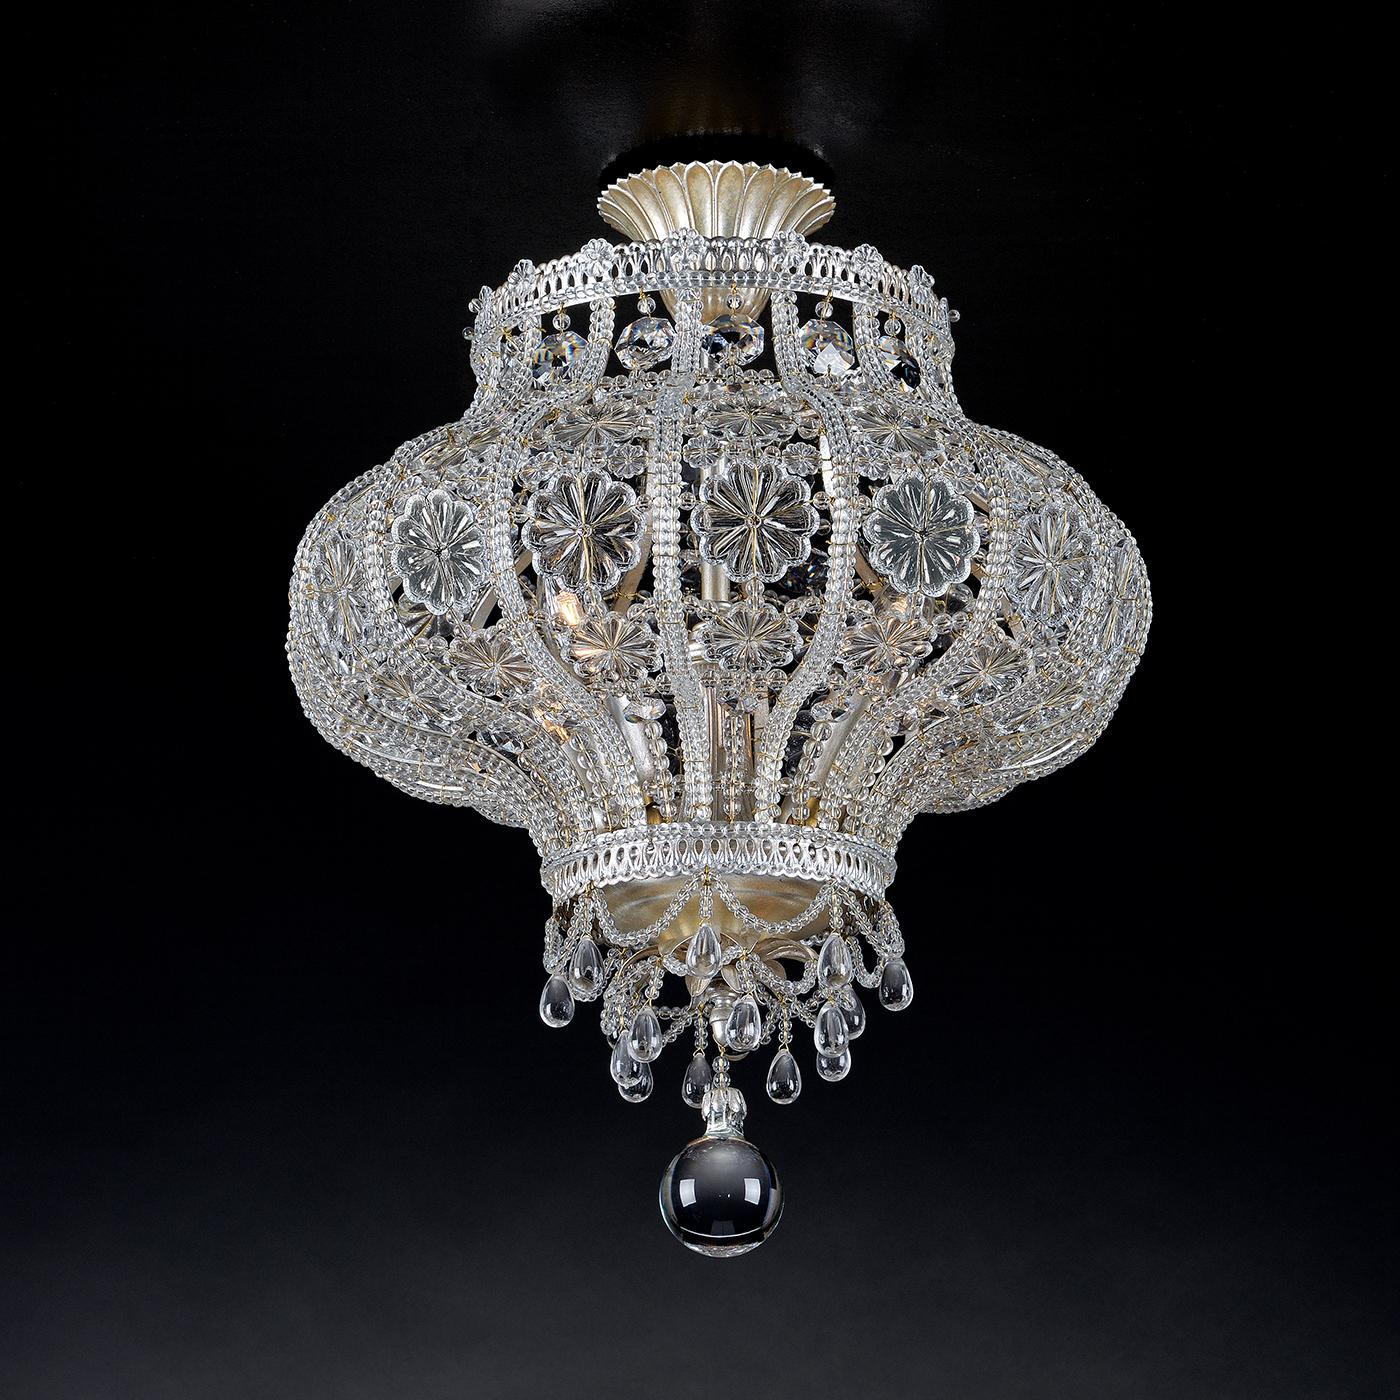 S'inspirant des lanternes du Moyen-Orient, ce plafonnier affleurant est entièrement fabriqué en Italie. Avec des cristaux de verre aux formes variées, le pendentif est complété par un revêtement de feuilles d'argent pour un maximum de brillance.